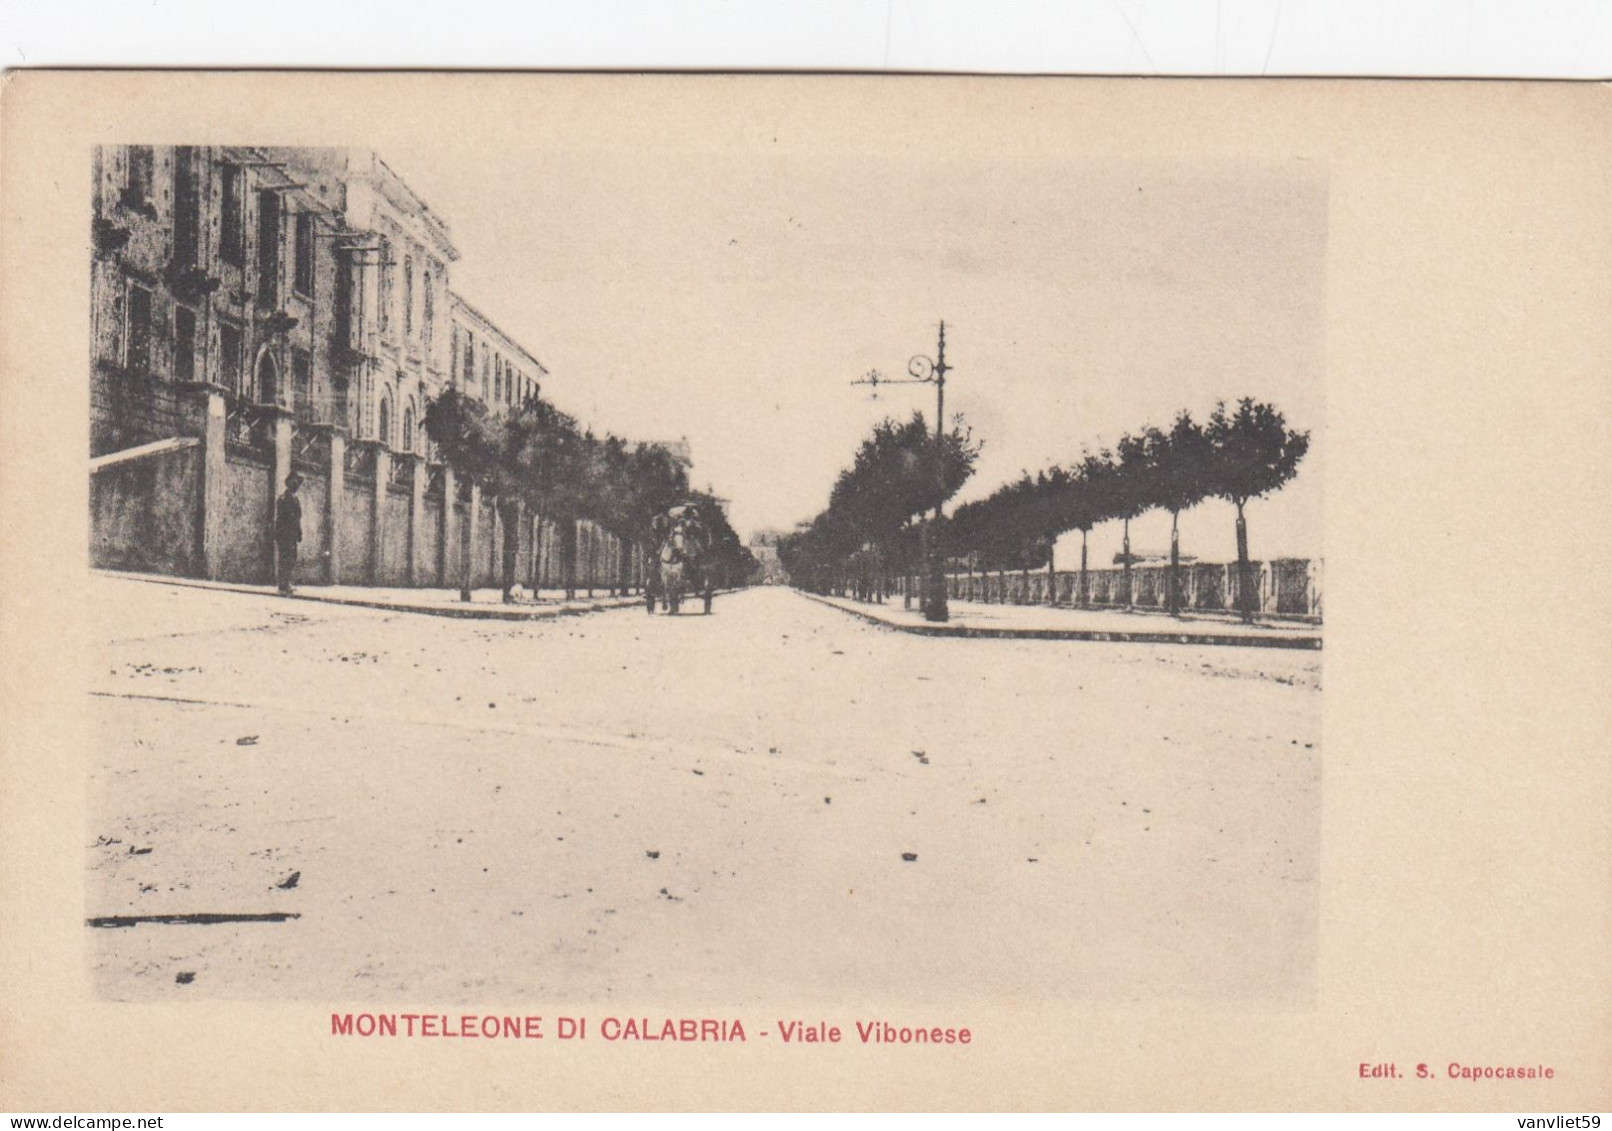 MONTELEONE DI CALABRIA-VIBO VALENTIA-VIALE VIBONESE  CARTOLINA NON VIAGGIATA 1900-1904-RETRO INDIVISO - Vibo Valentia